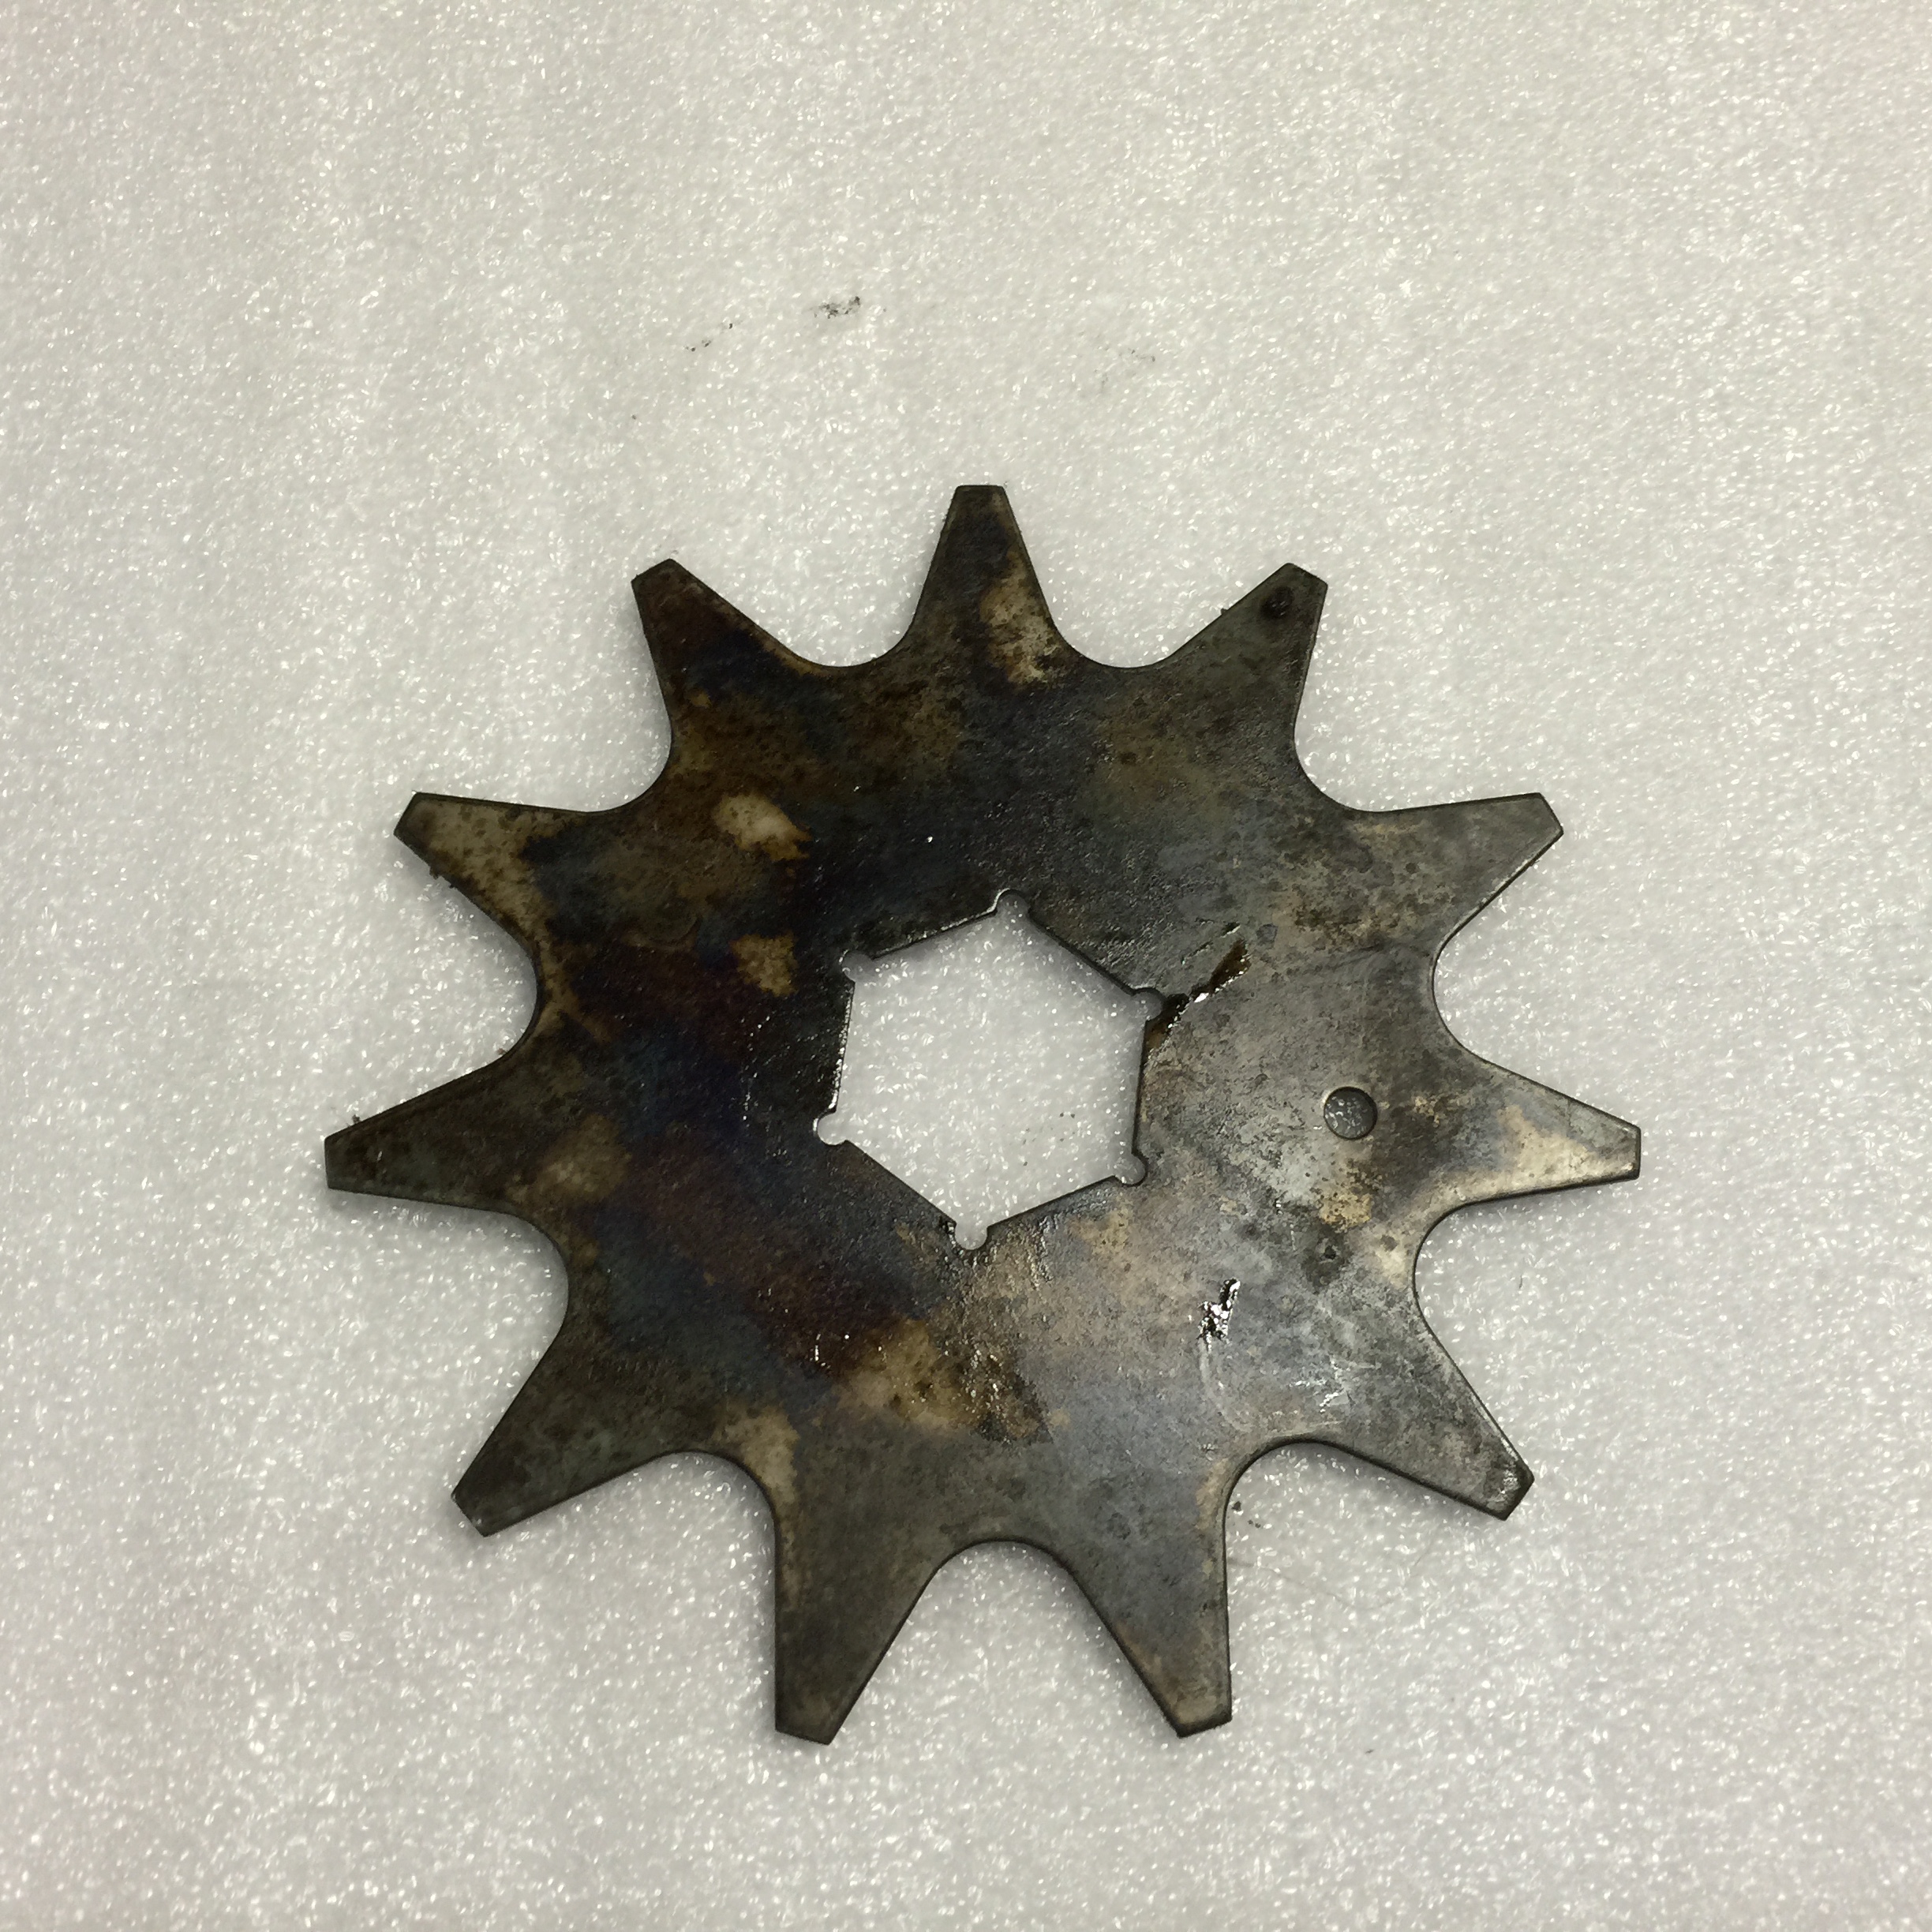 D-frenillo roto gummigebiss de acero inoxidable tamaño 12,5 cm nº 466 